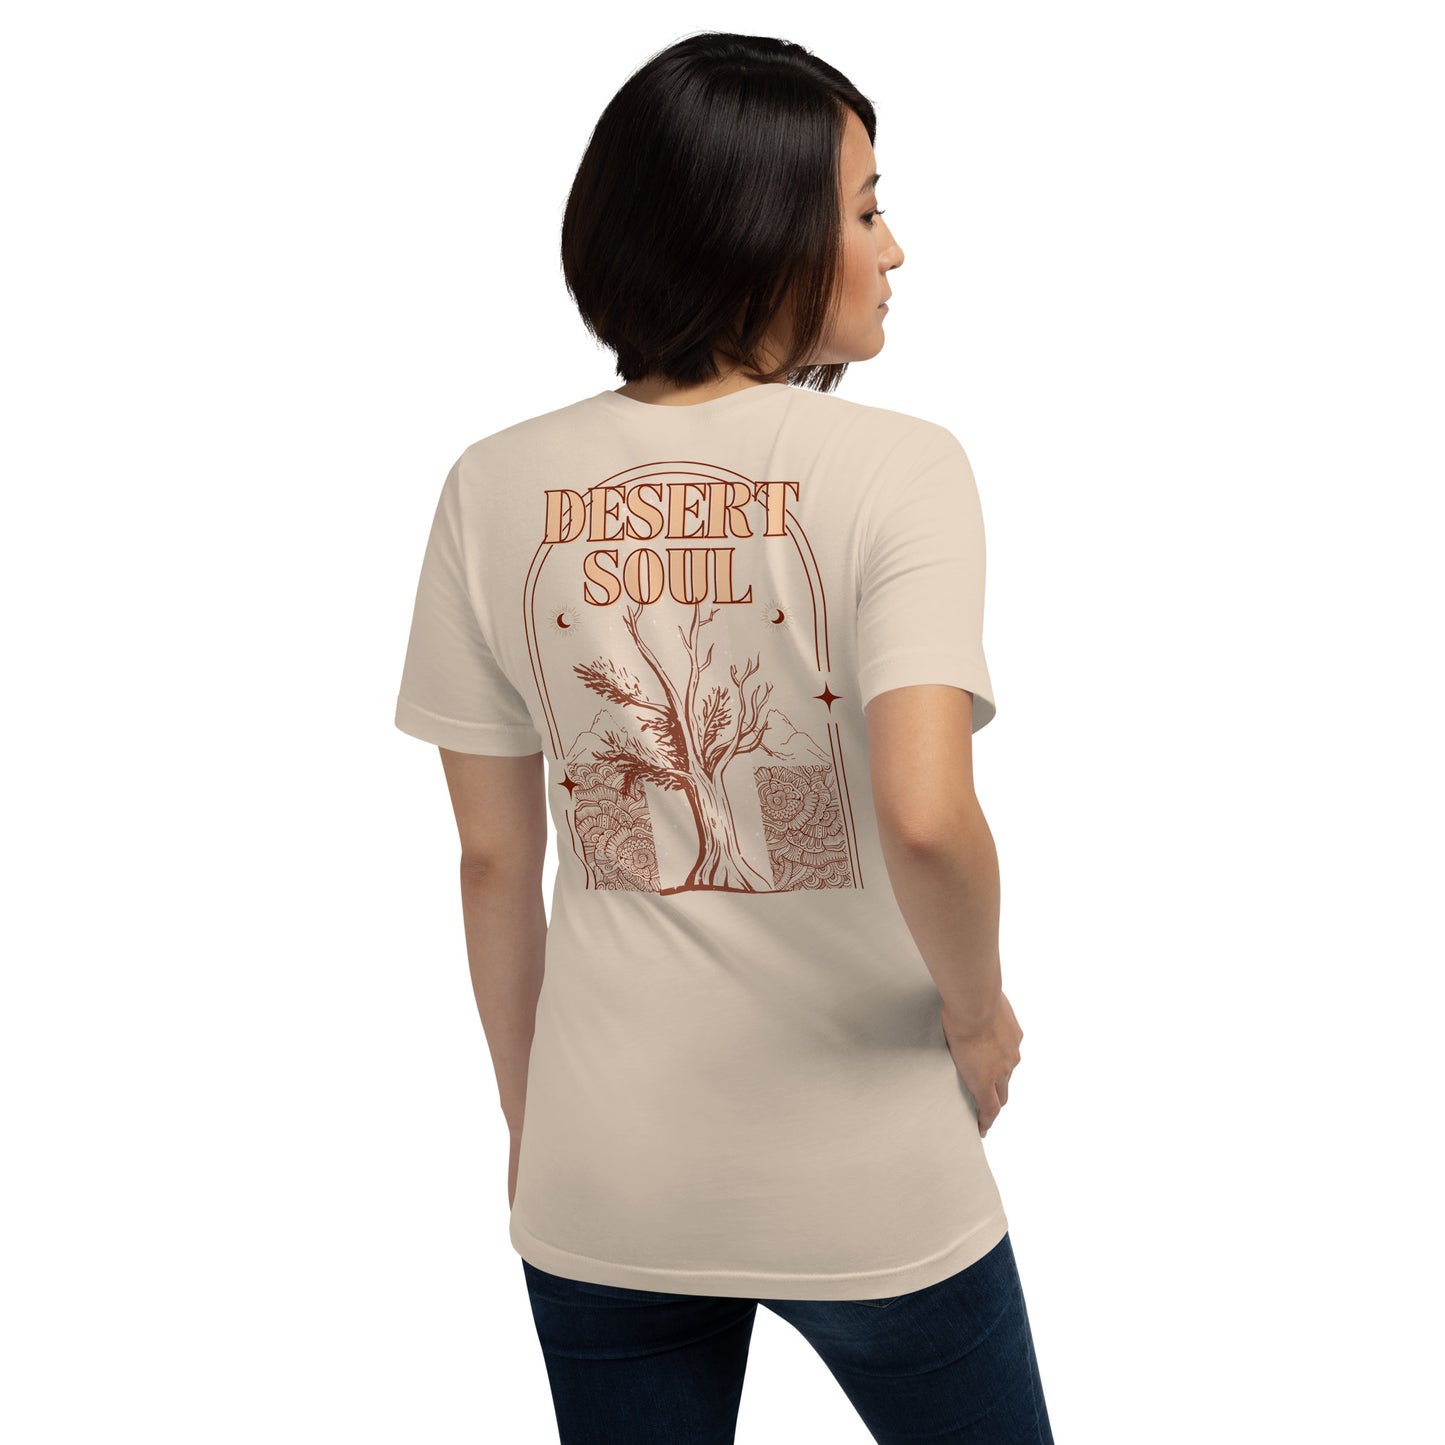 DESERT SOUL Unisex T-Shirt in Soft Cream - Back Graphic